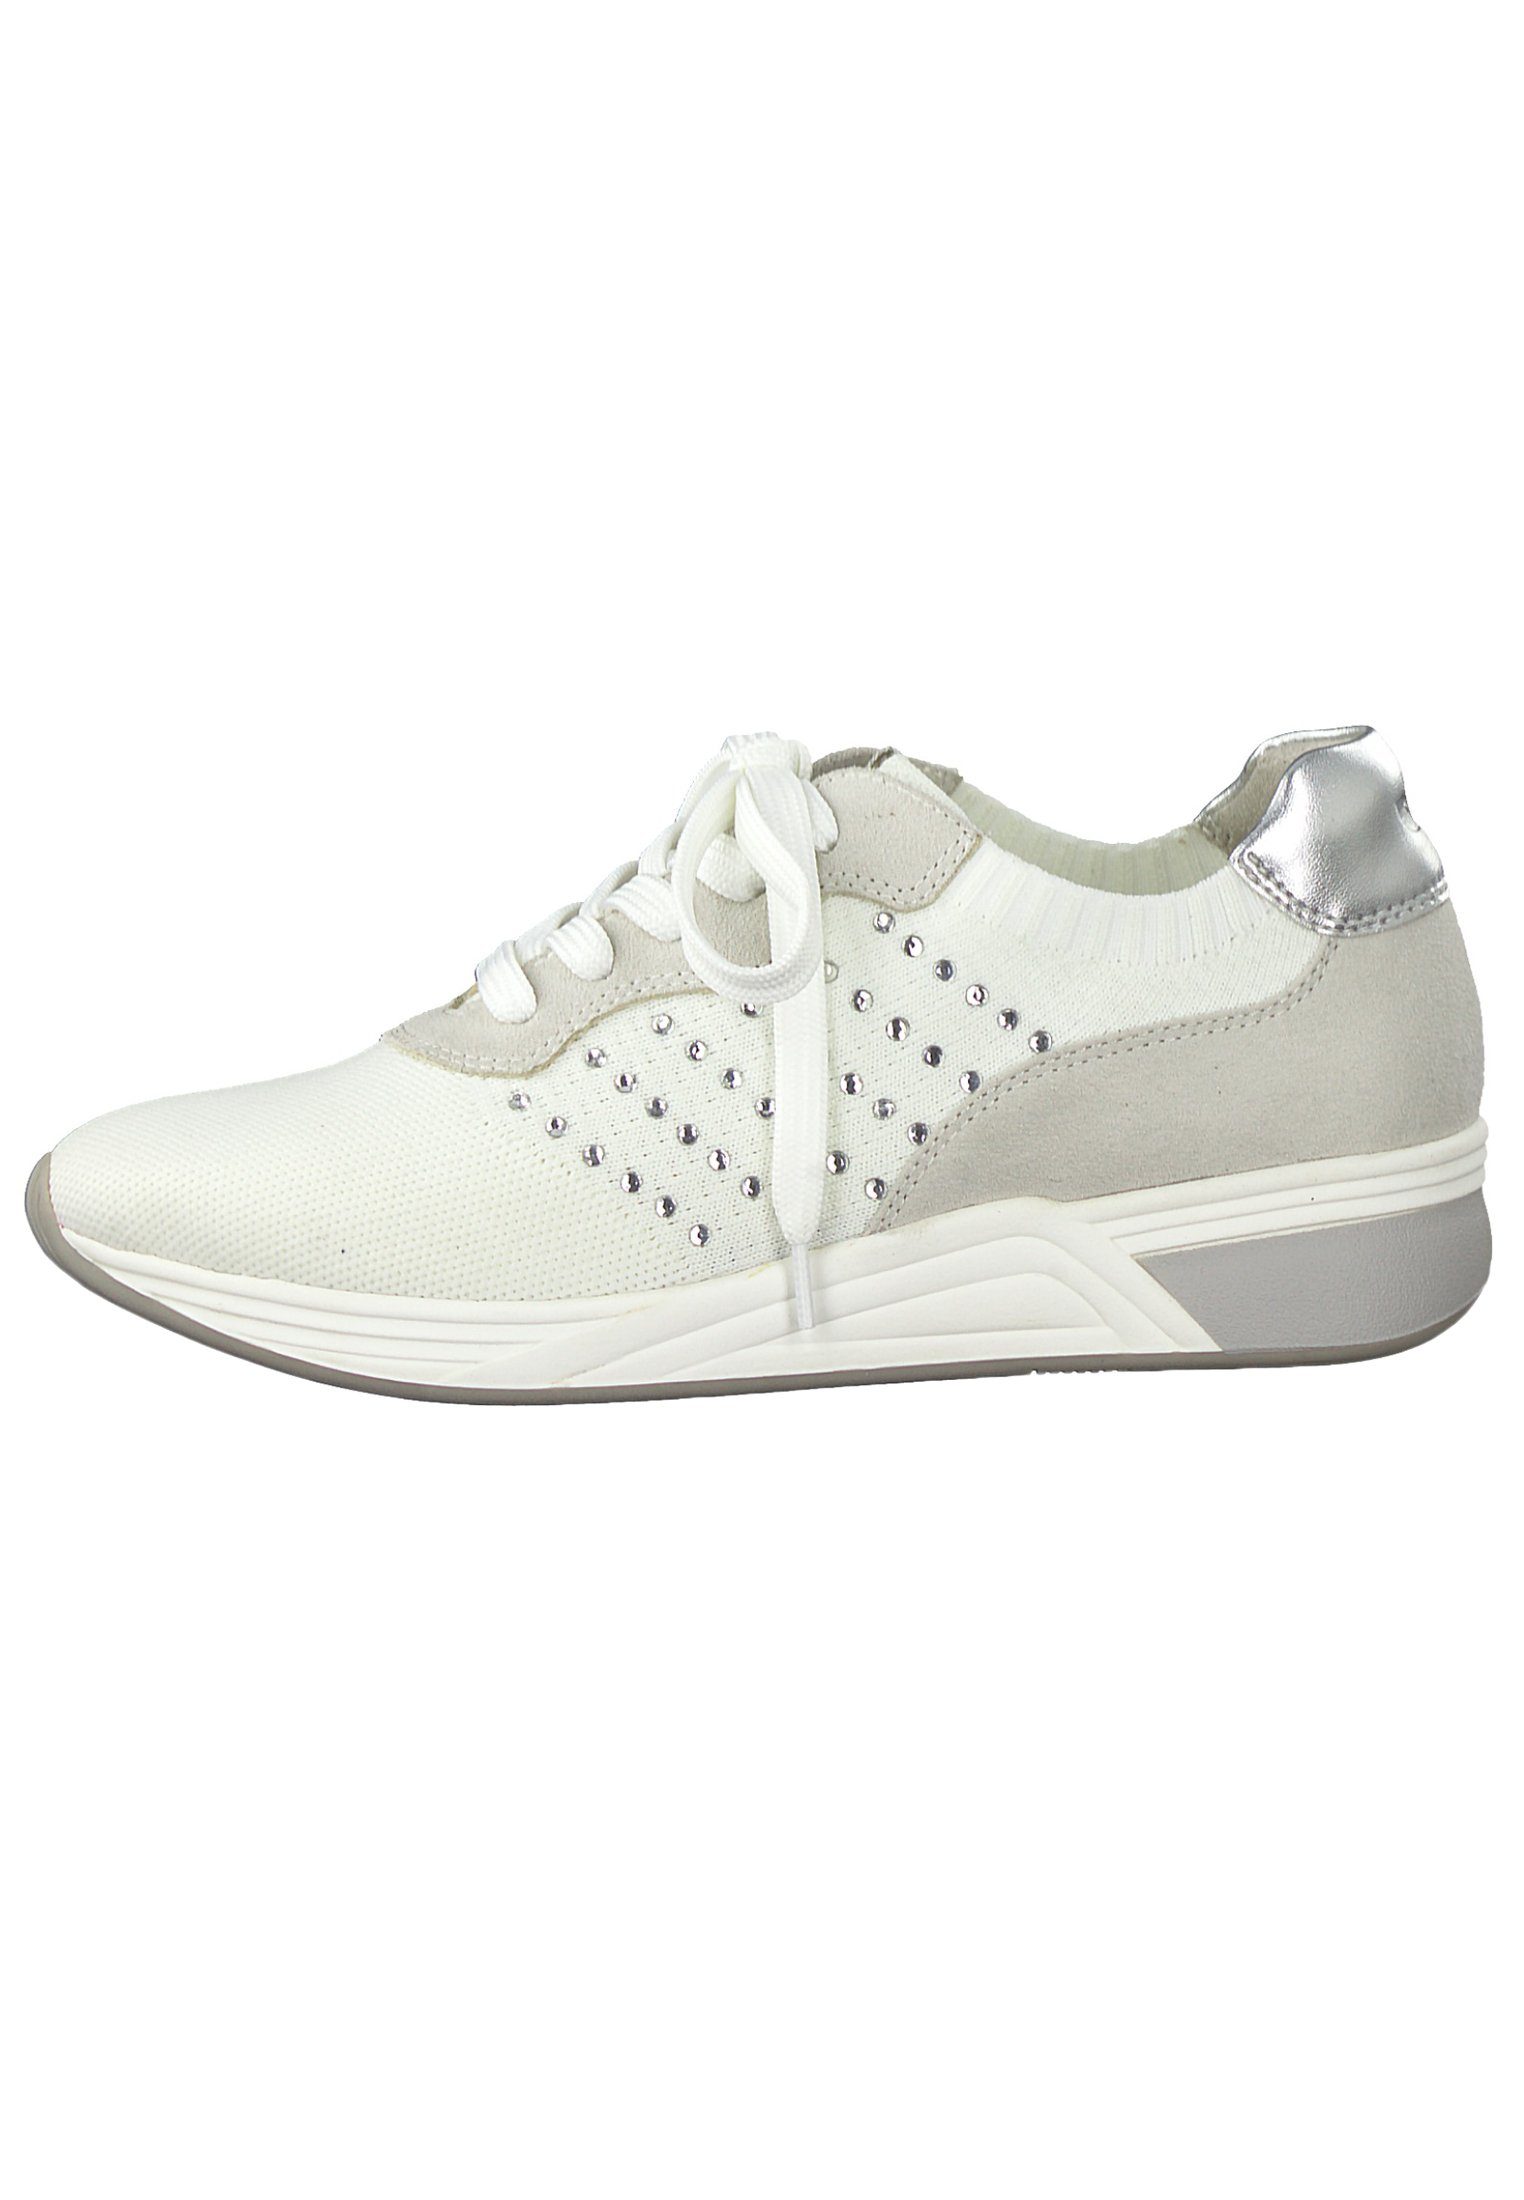 MARCO TOZZI Comb 197 2-2-23784-24 Sneaker White